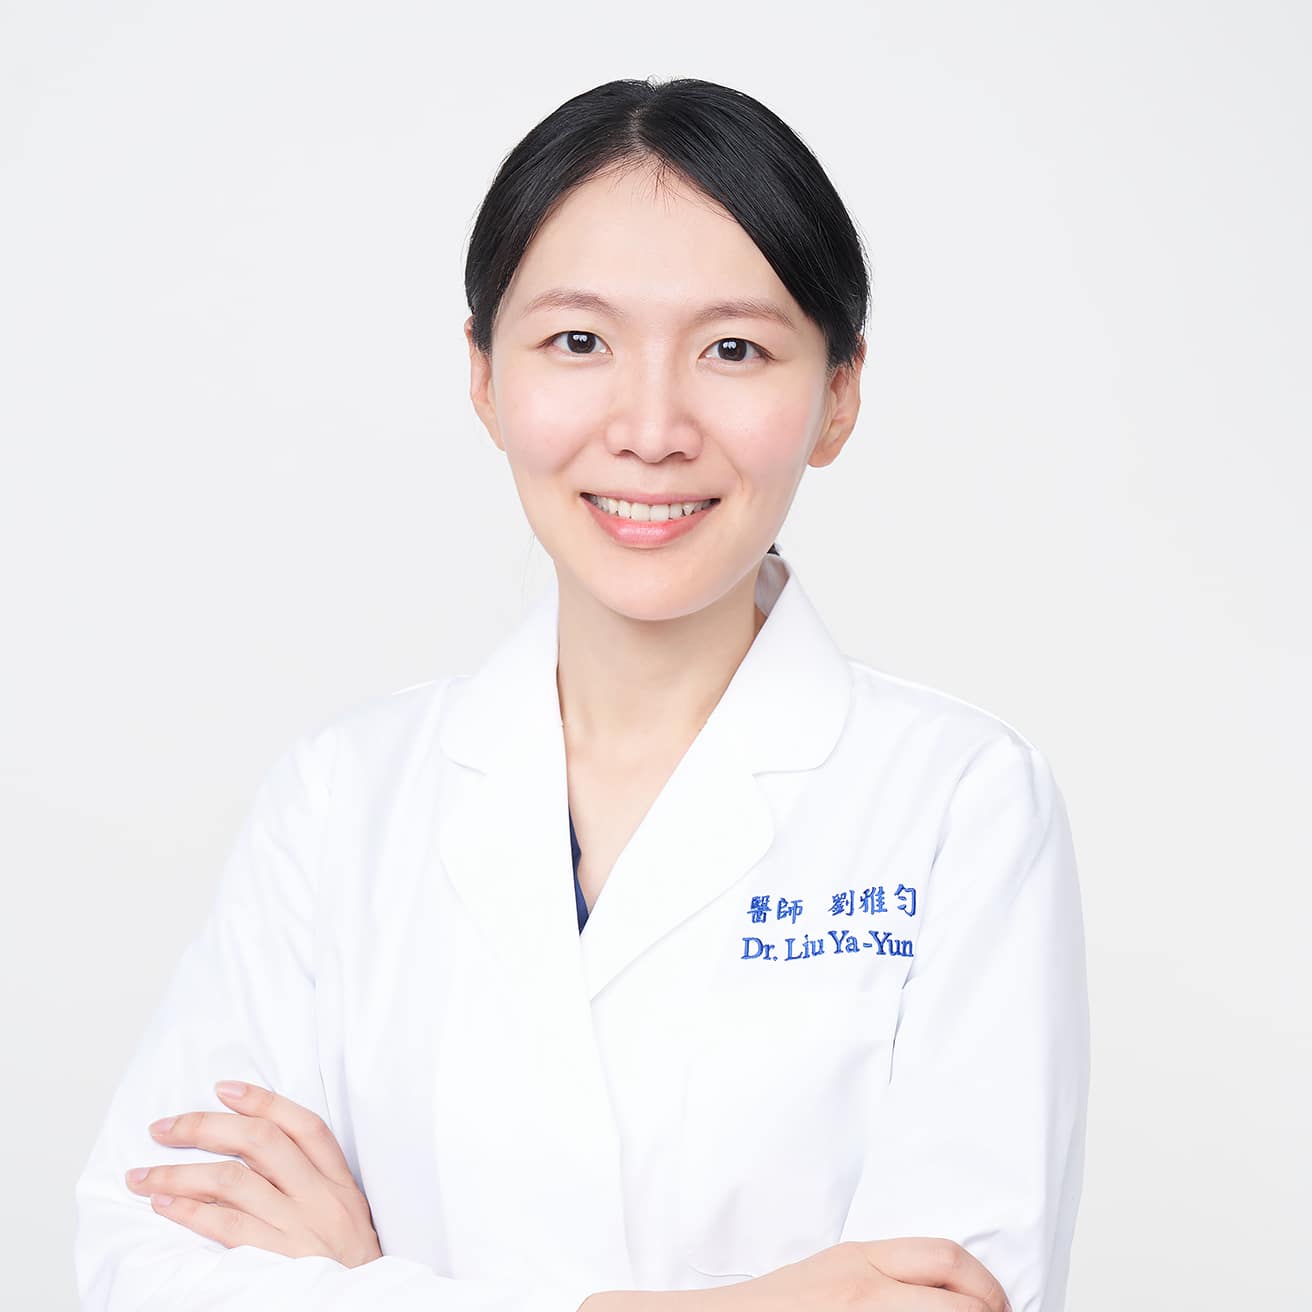 劉雅勻醫師Dr.Ya-Yun Liu (1)